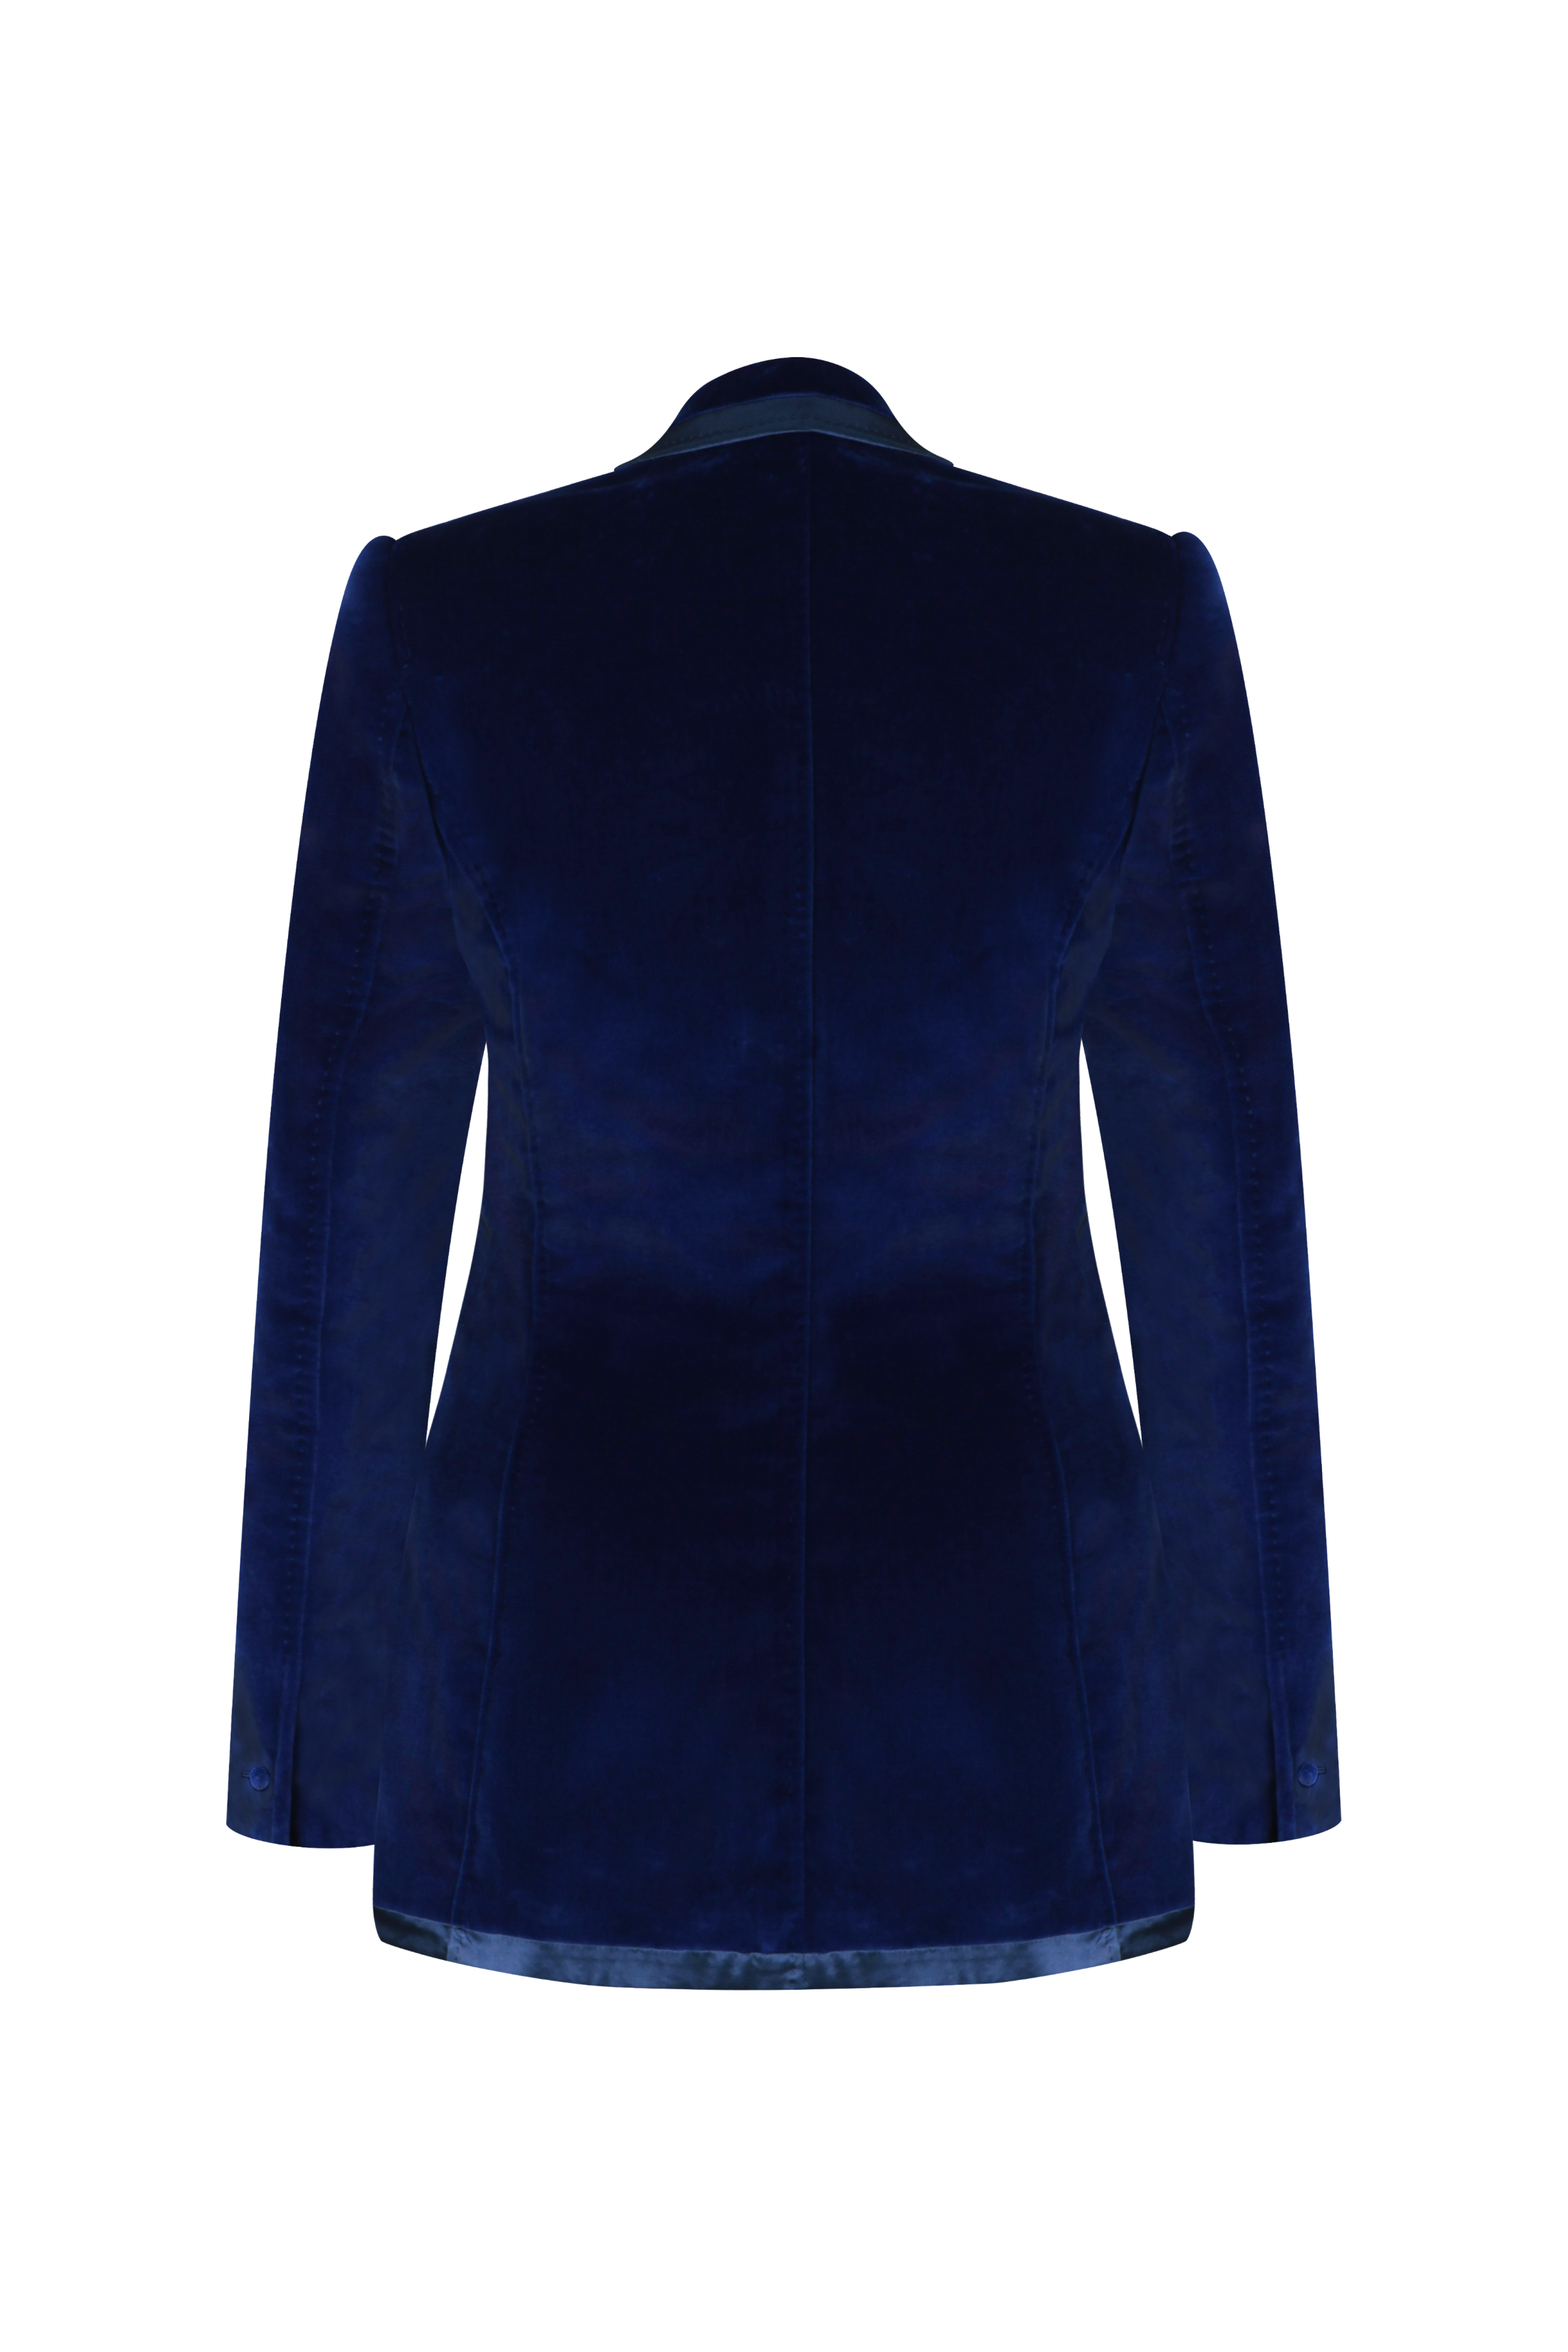 Royal Blue Plain Ladies Formal Pant Suit, Size: Medium, Velvet at